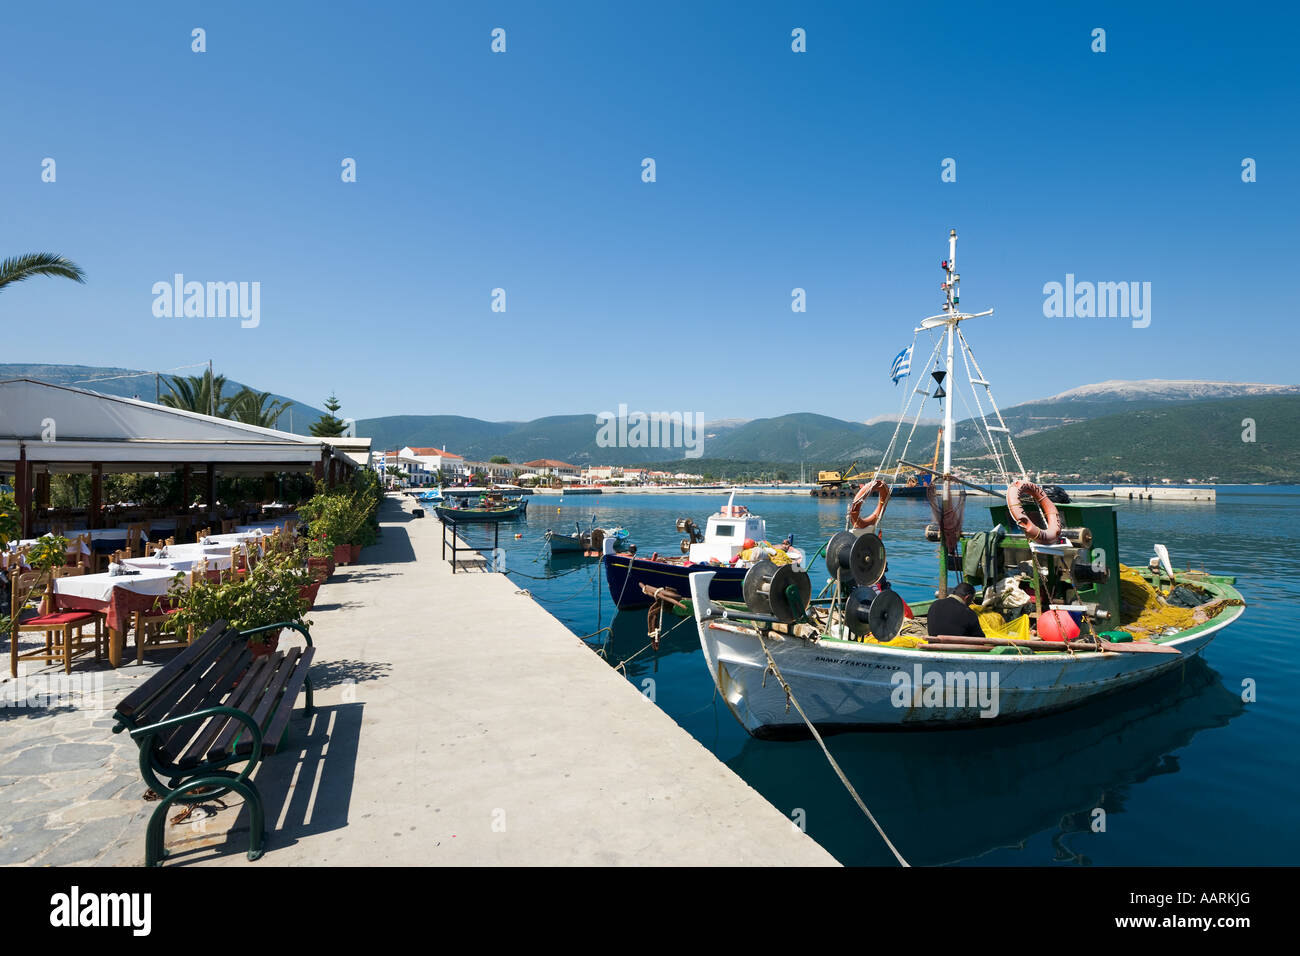 Taverne en bord de mer, bateaux de pêche et de la promenade, Sami, Kefalonia, îles Ioniennes, Grèce Banque D'Images